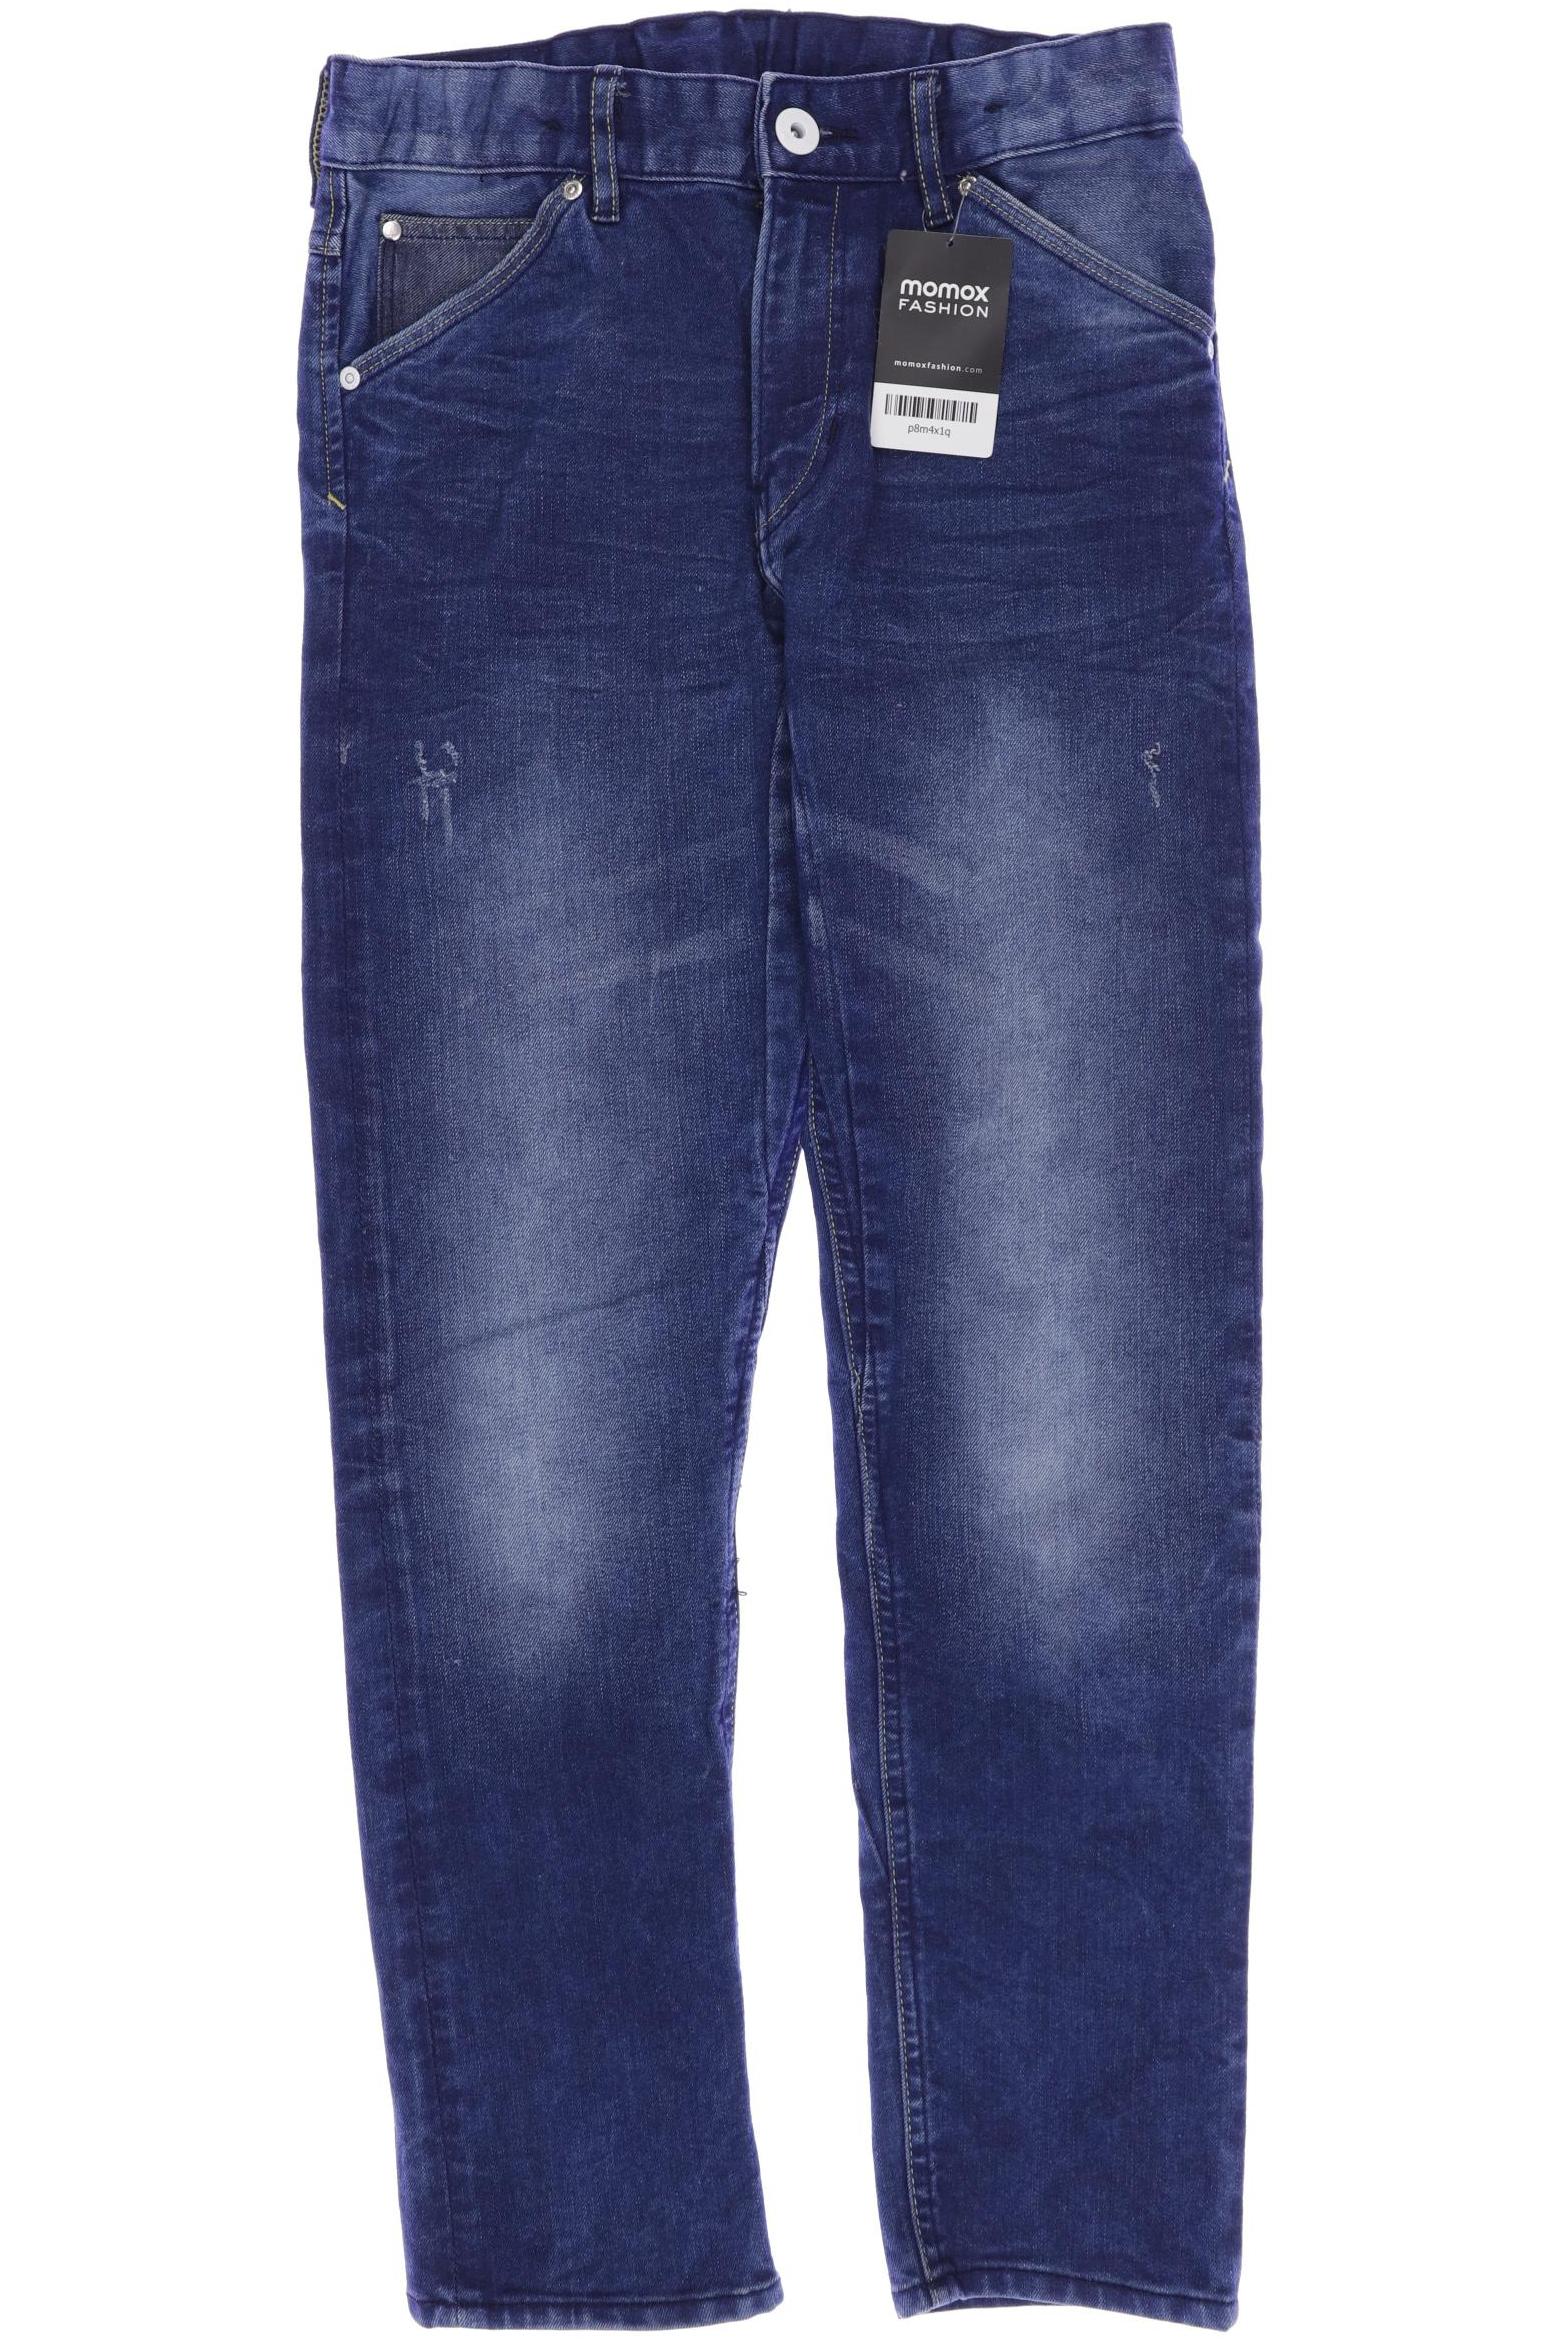 H&M Herren Jeans, blau, Gr. 152 von H&M